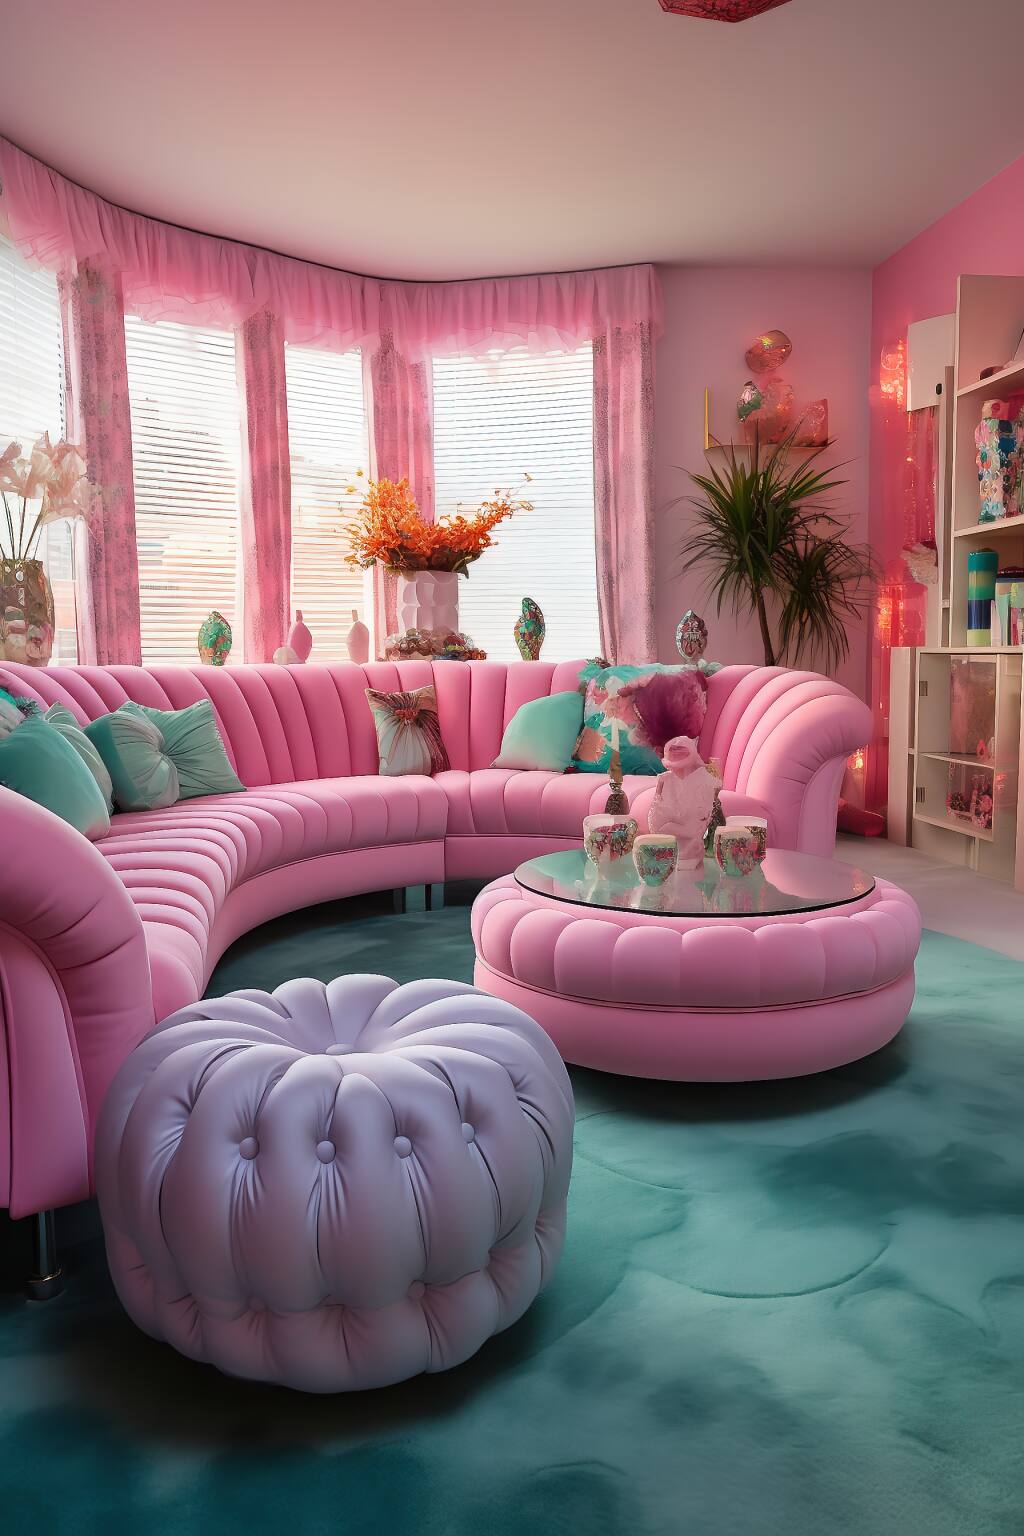 Ein Romantisches Retro-Wohnzimmer Mit Rosafarbenen Geschwungenen Sofas, Rosafarbenen Getufteten Ottomanen Und Einem Blaugrünen Teppich Bei Sanfter Beleuchtung.